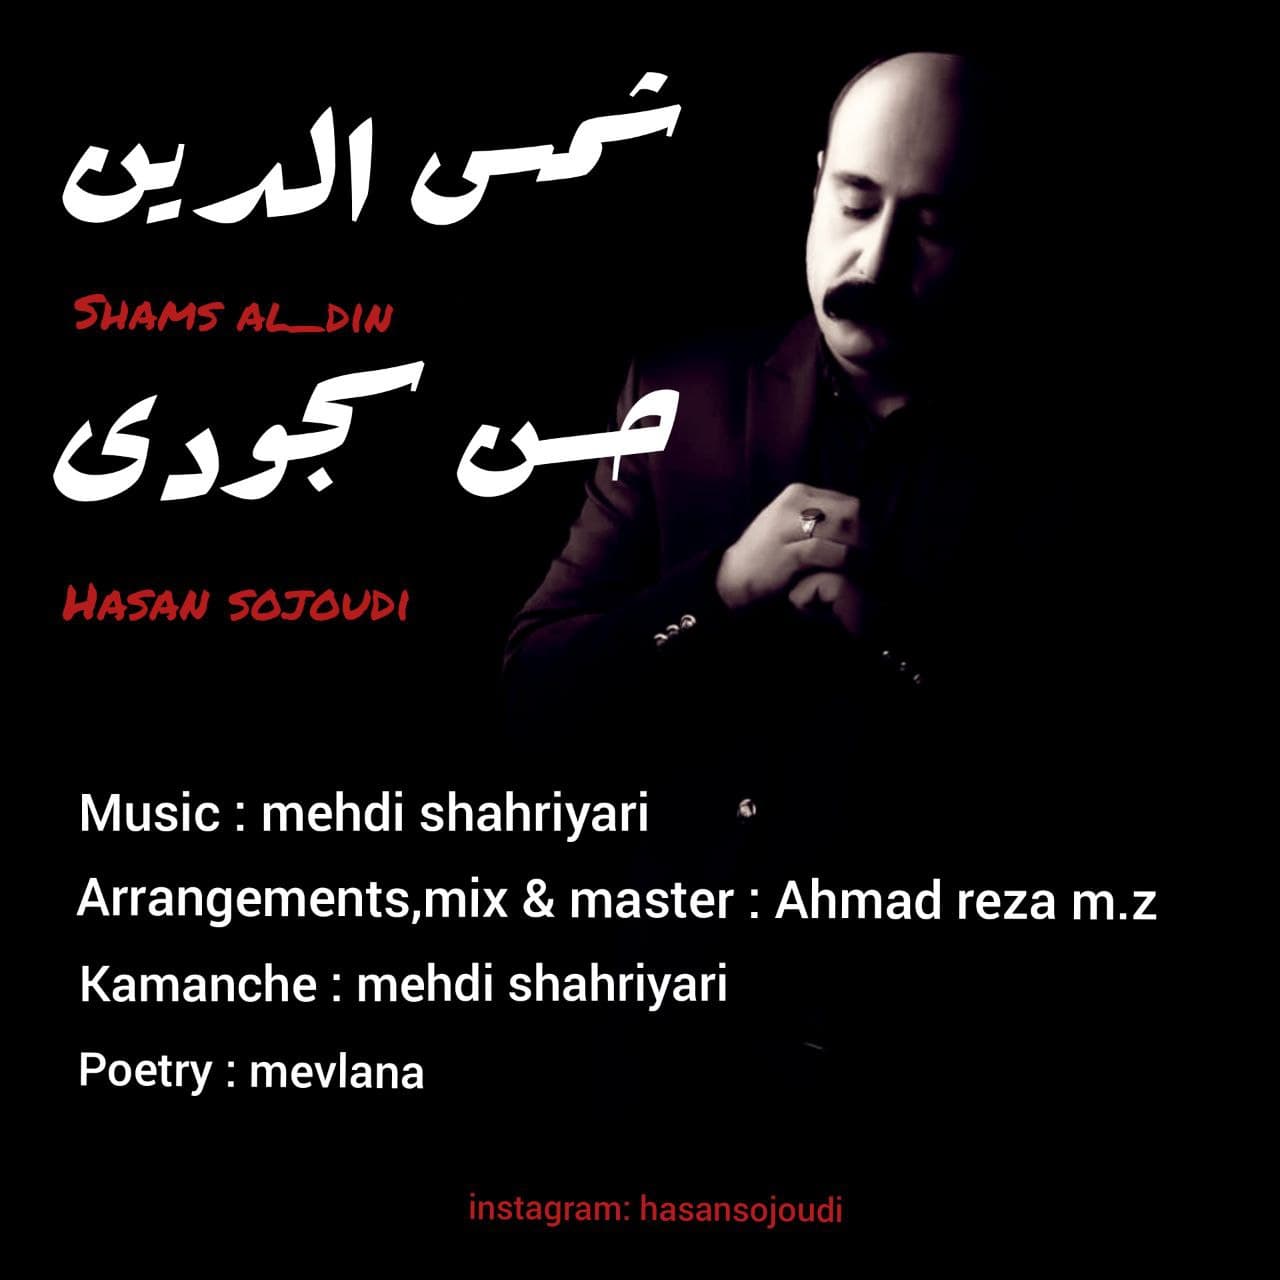 دانلود آهنگ جدید حسن سجودی بنام شمس الدین